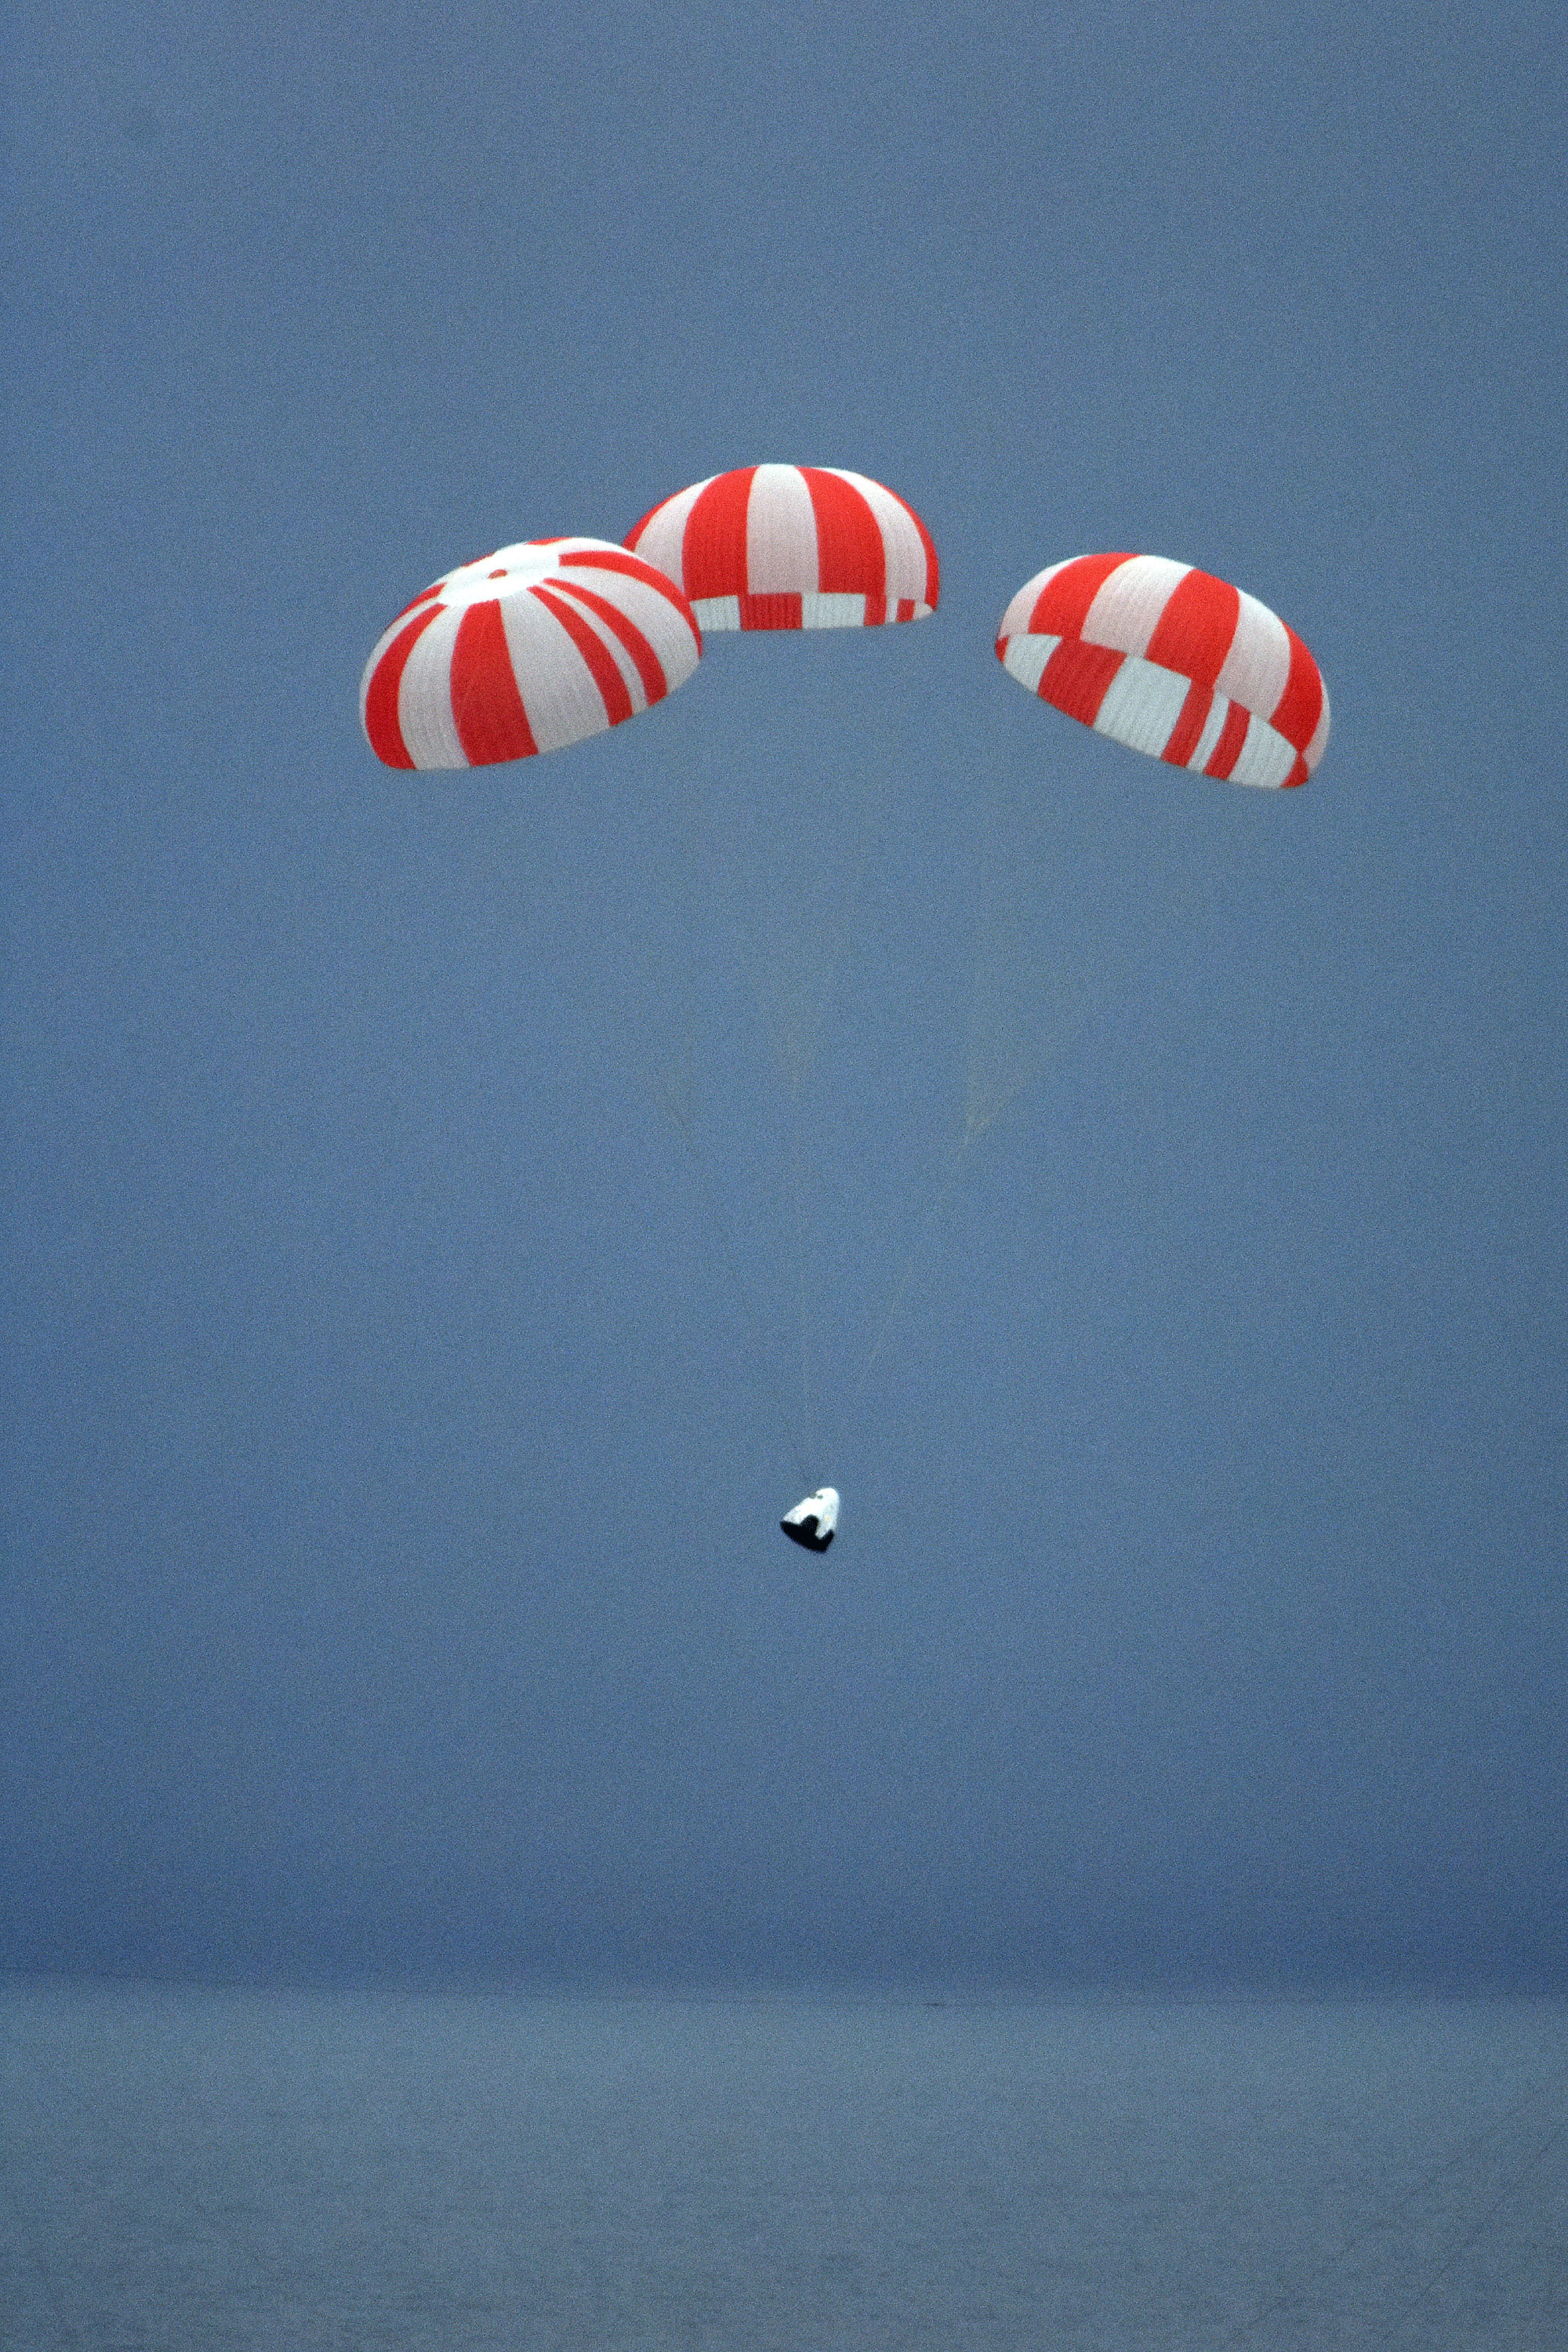 Lądowanie kapsuły Dragon 2 po teście systemu ewakuacji z platformy startowej (Źródło: SpaceX)